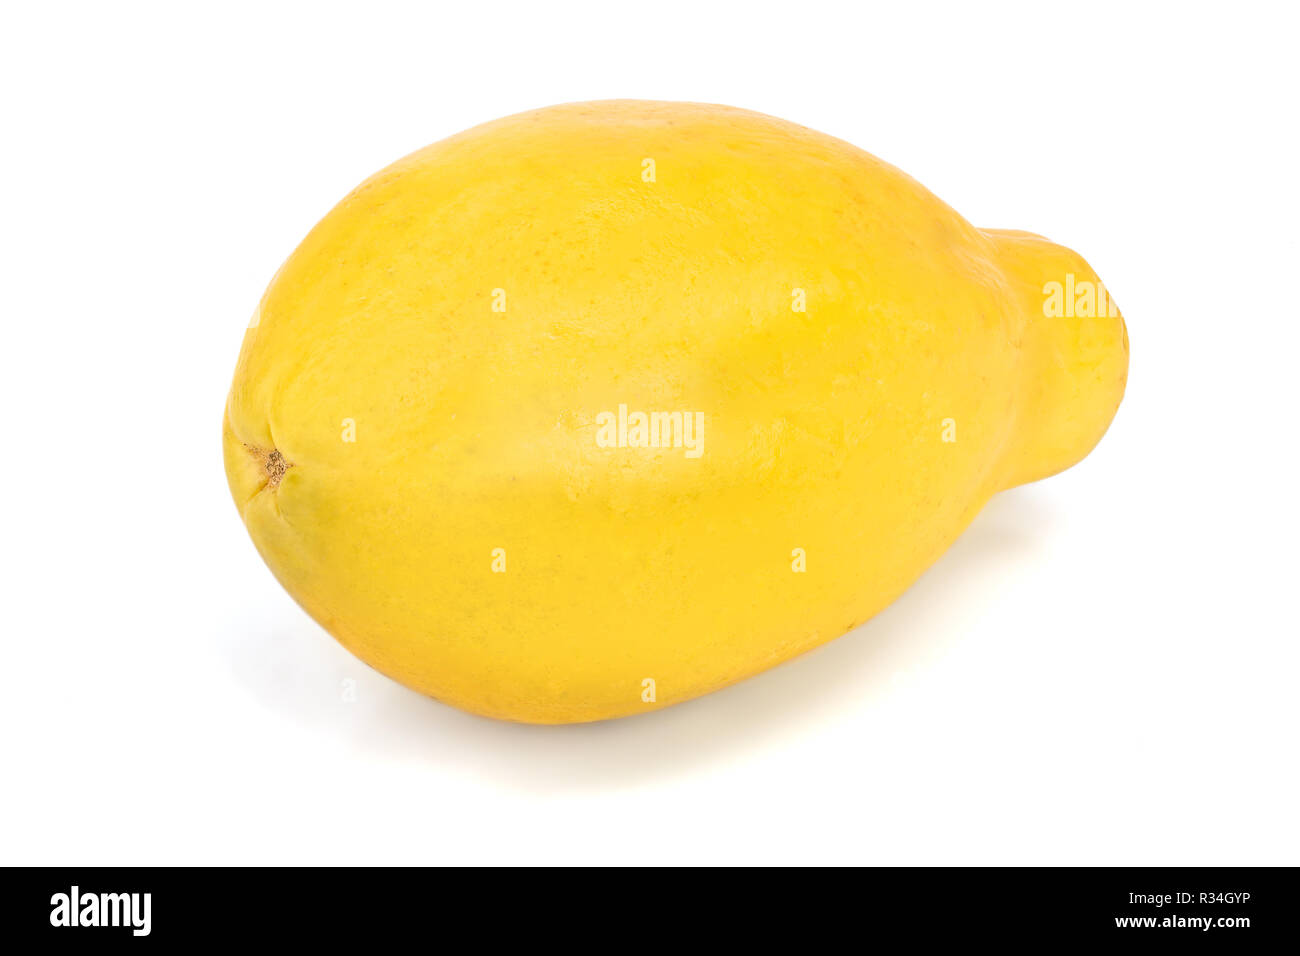 ripe papaya isolated on a white background Stock Photo